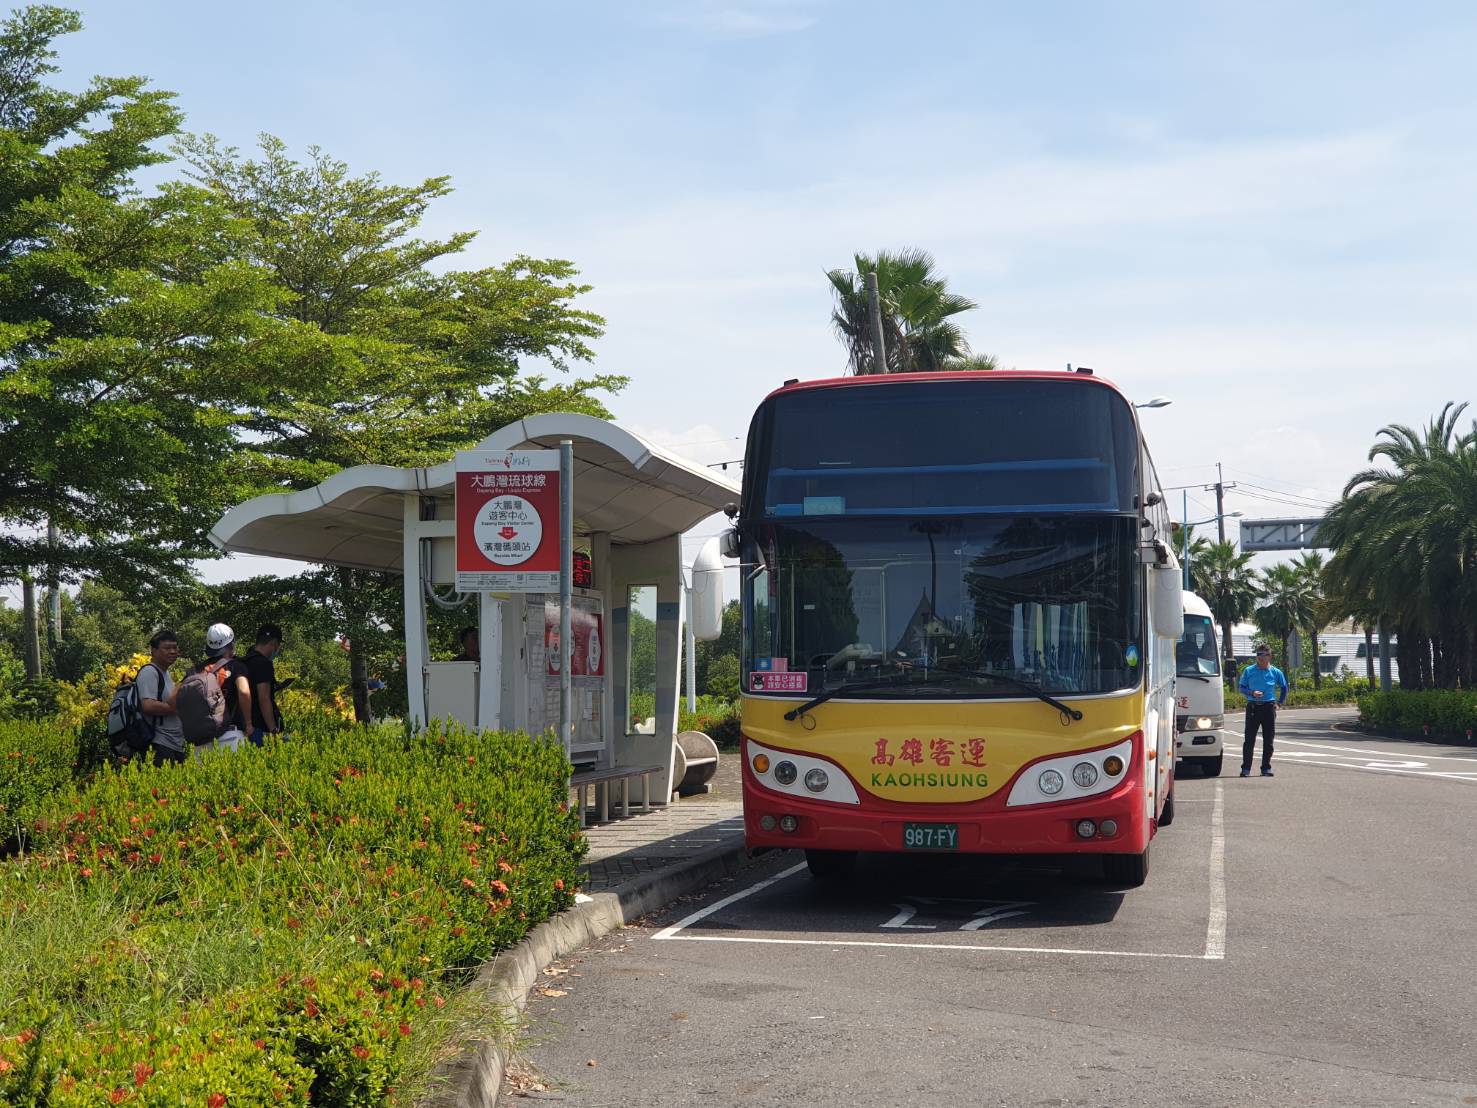 Ankunft am Dapeng Bay Visitor Center Station